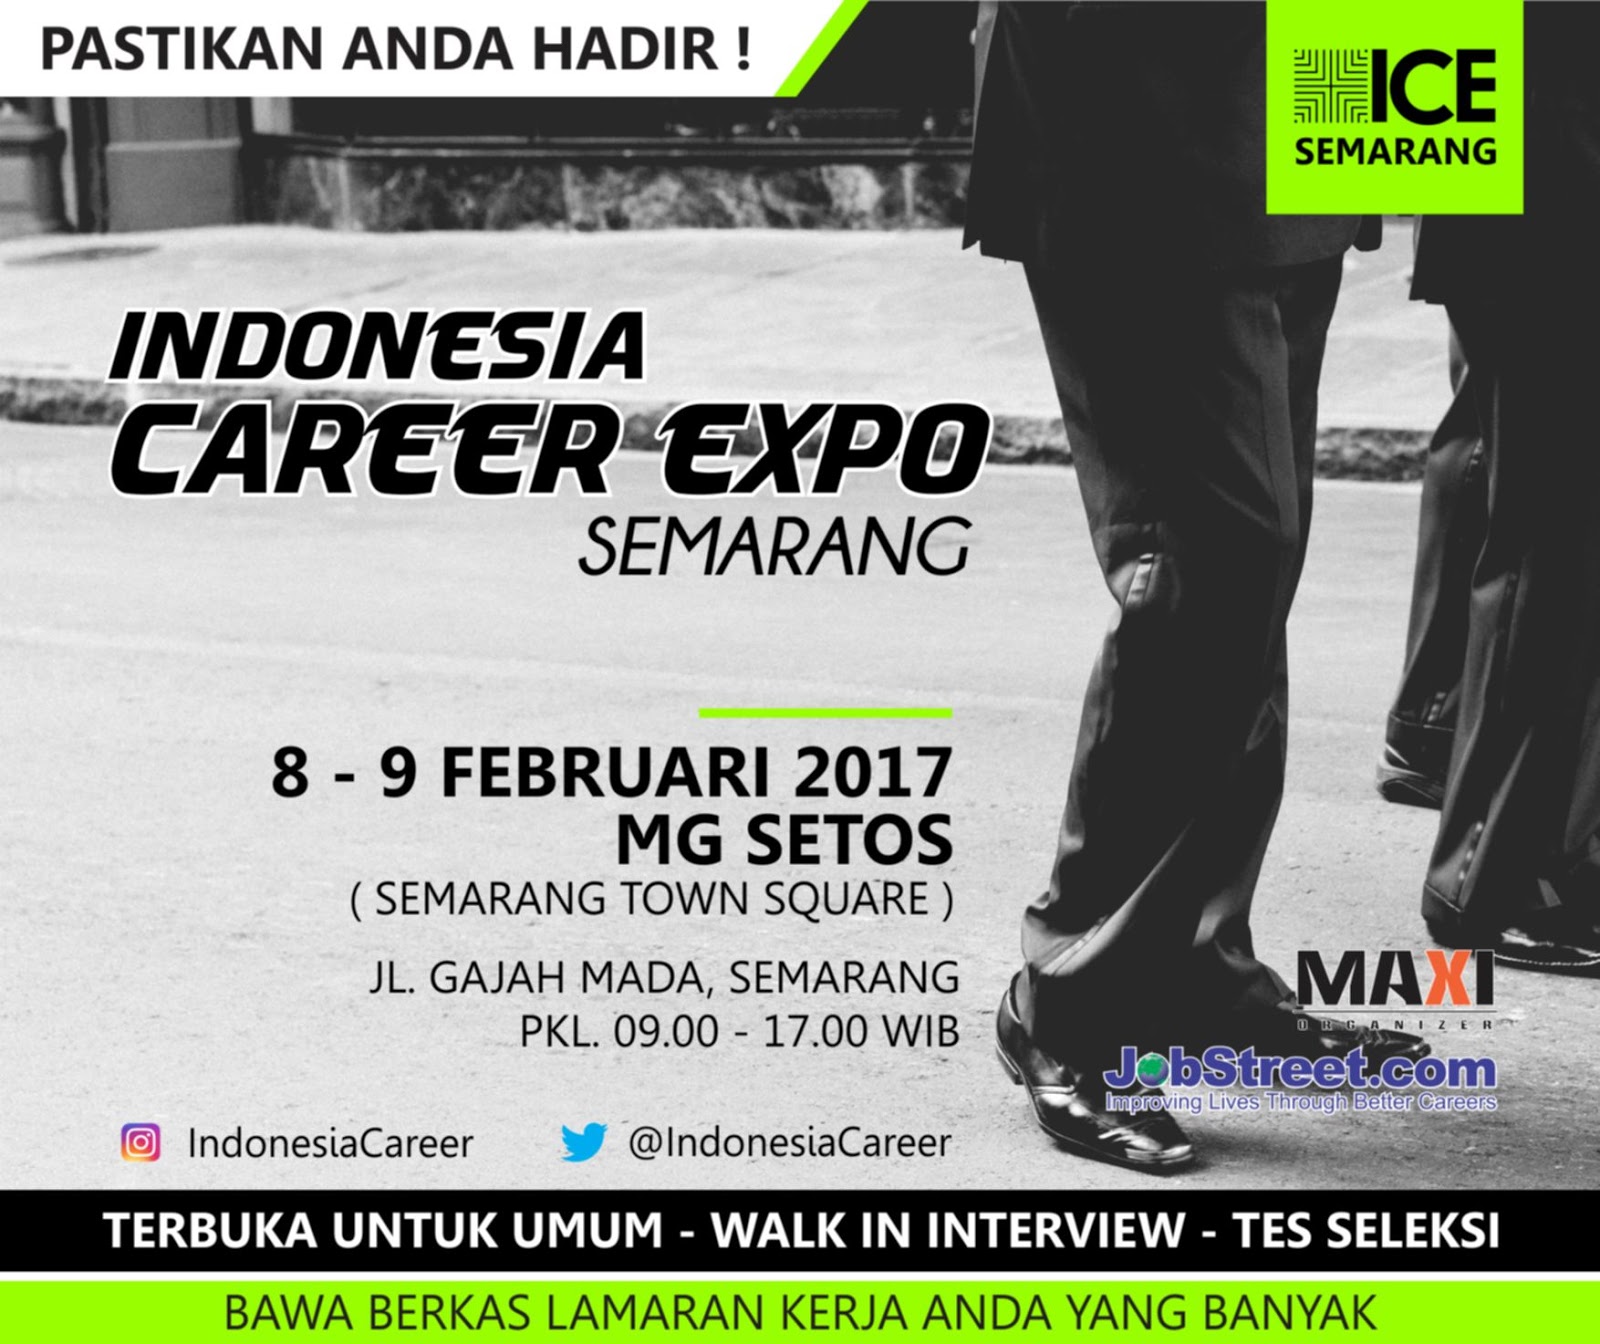 Indonesia Career Expo di MG Setos Semarang Tanggal 8 - 9 Februari 2017